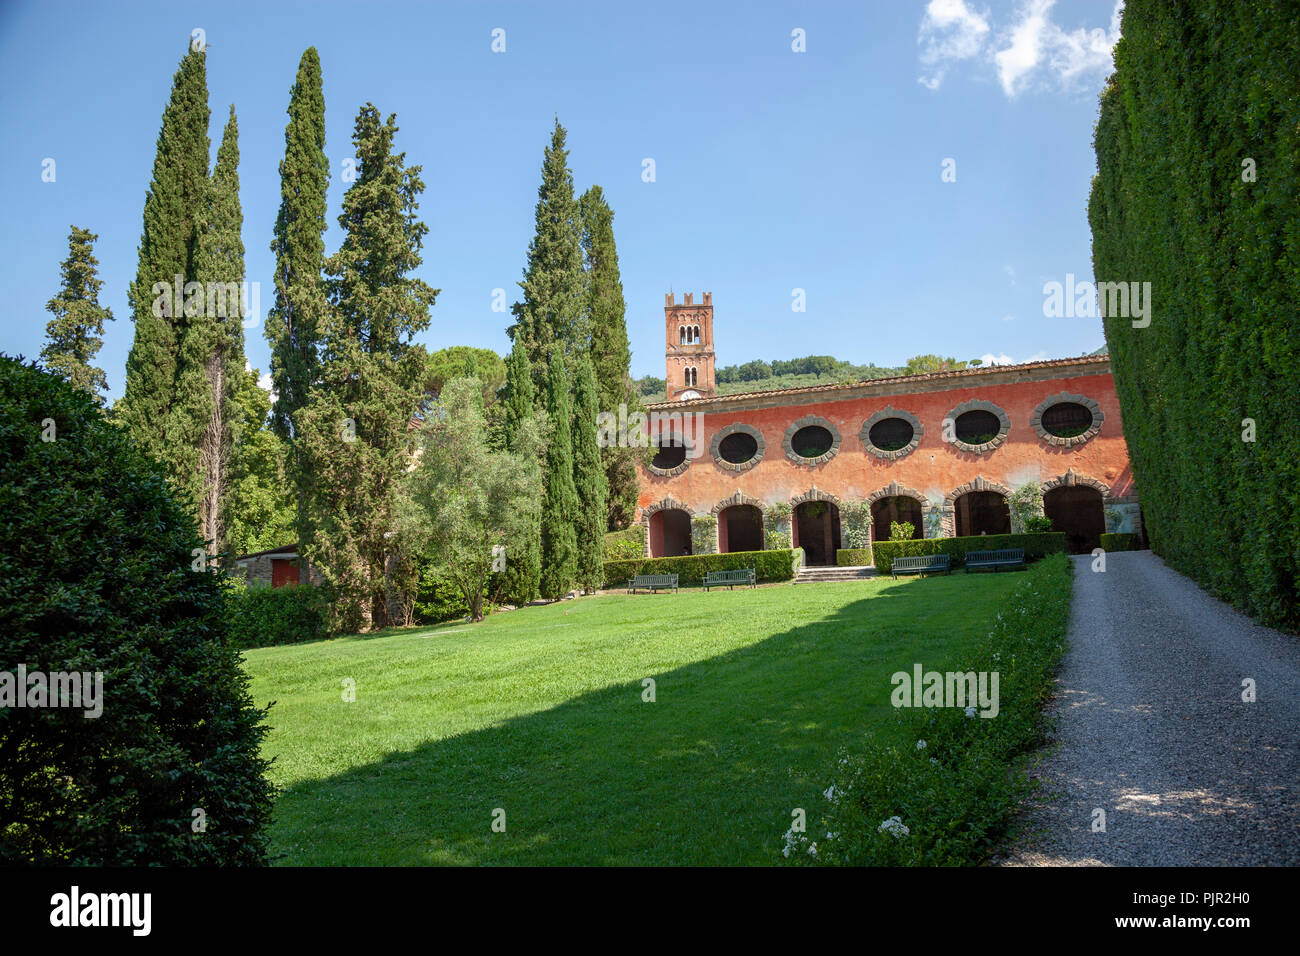 L'Aranciera di Villa Grabau a San Pancrazio (Lucca-Tuscany-Italia). Vuoto al momento della fotografia, è utilizzato per lo stoccaggio di agrumi. Foto Stock